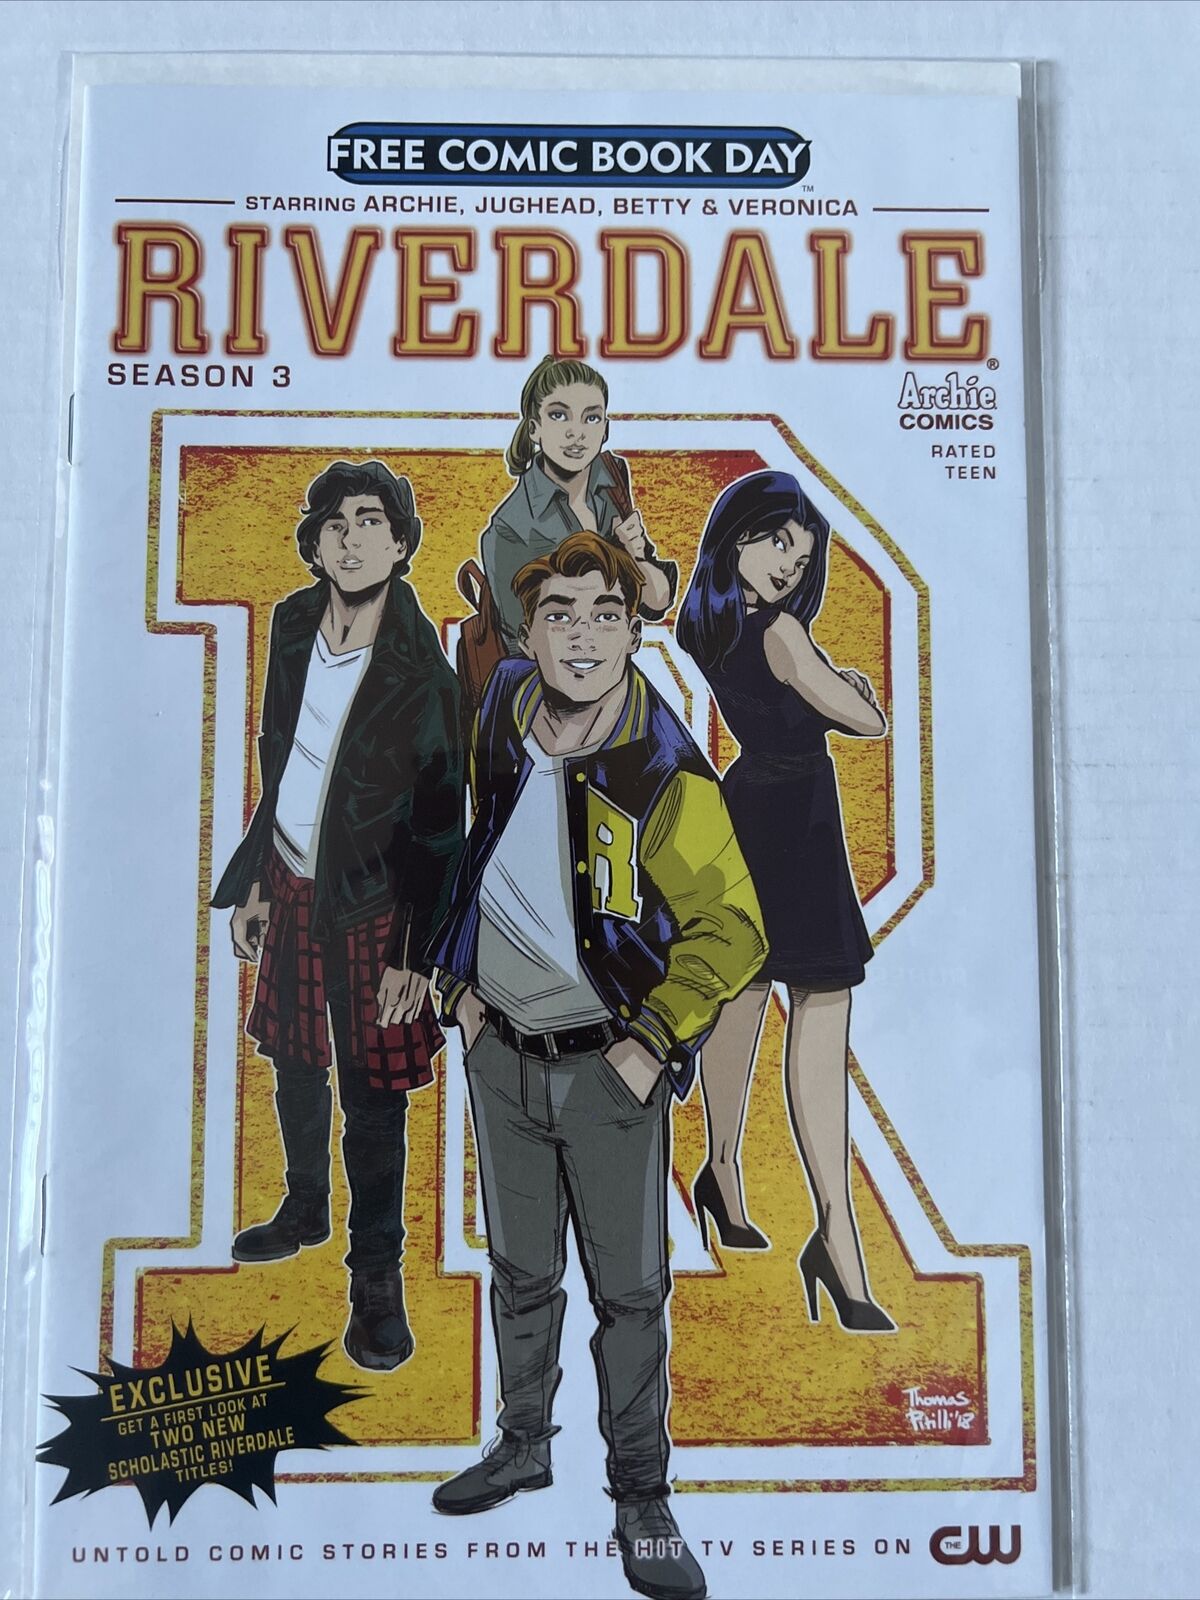 Riverdale Season 3  (2019) | Free Comic Book Day | Archie Comics | CW